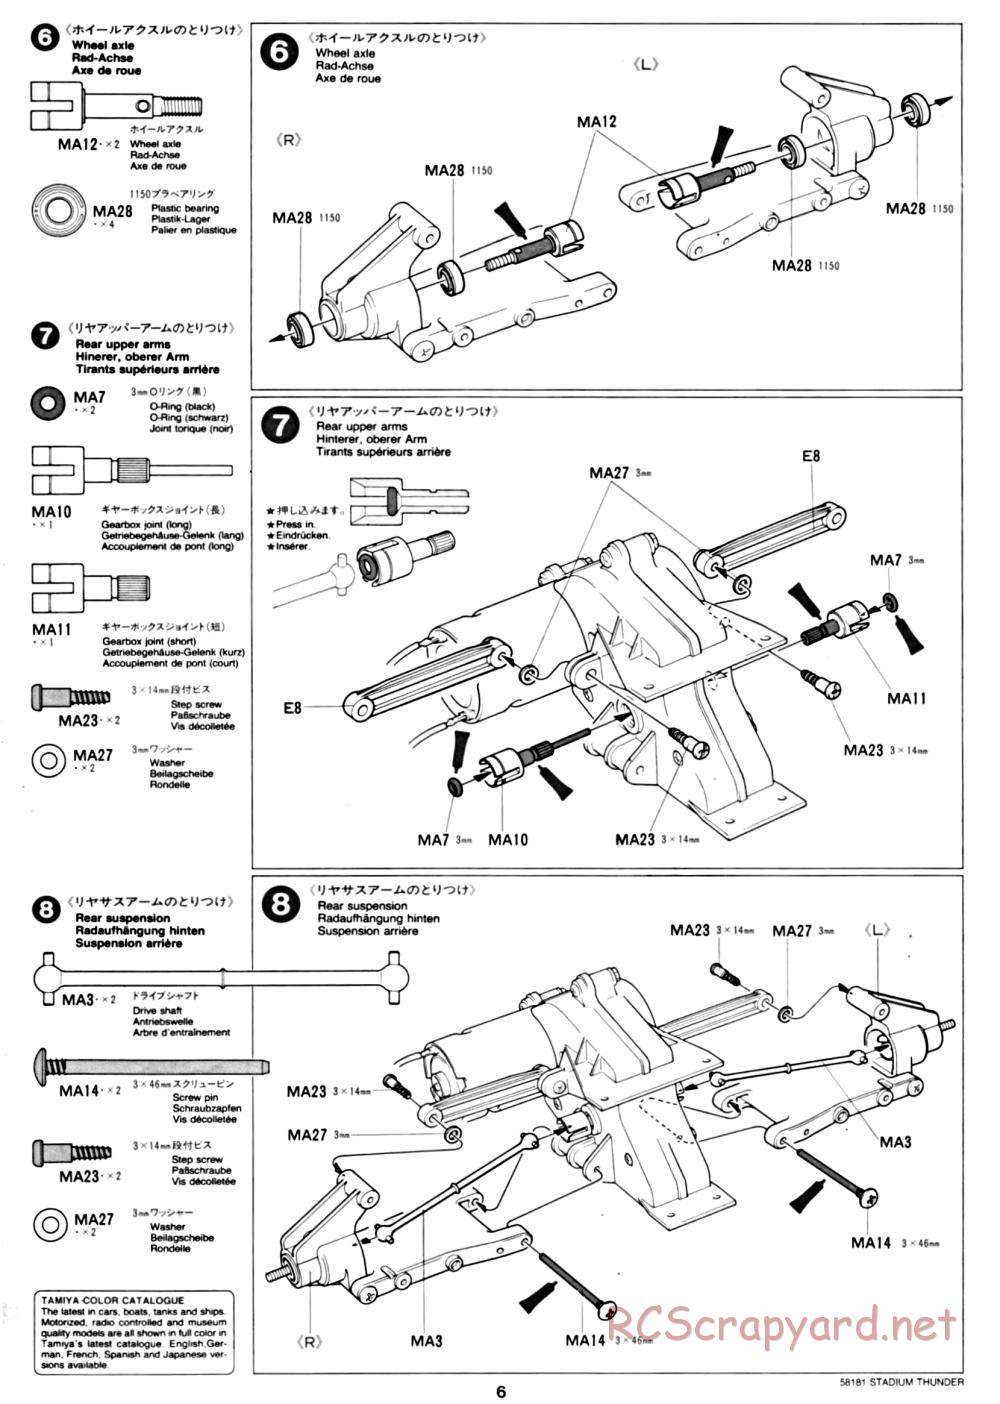 Tamiya - Stadium Thunder Chassis - Manual - Page 6